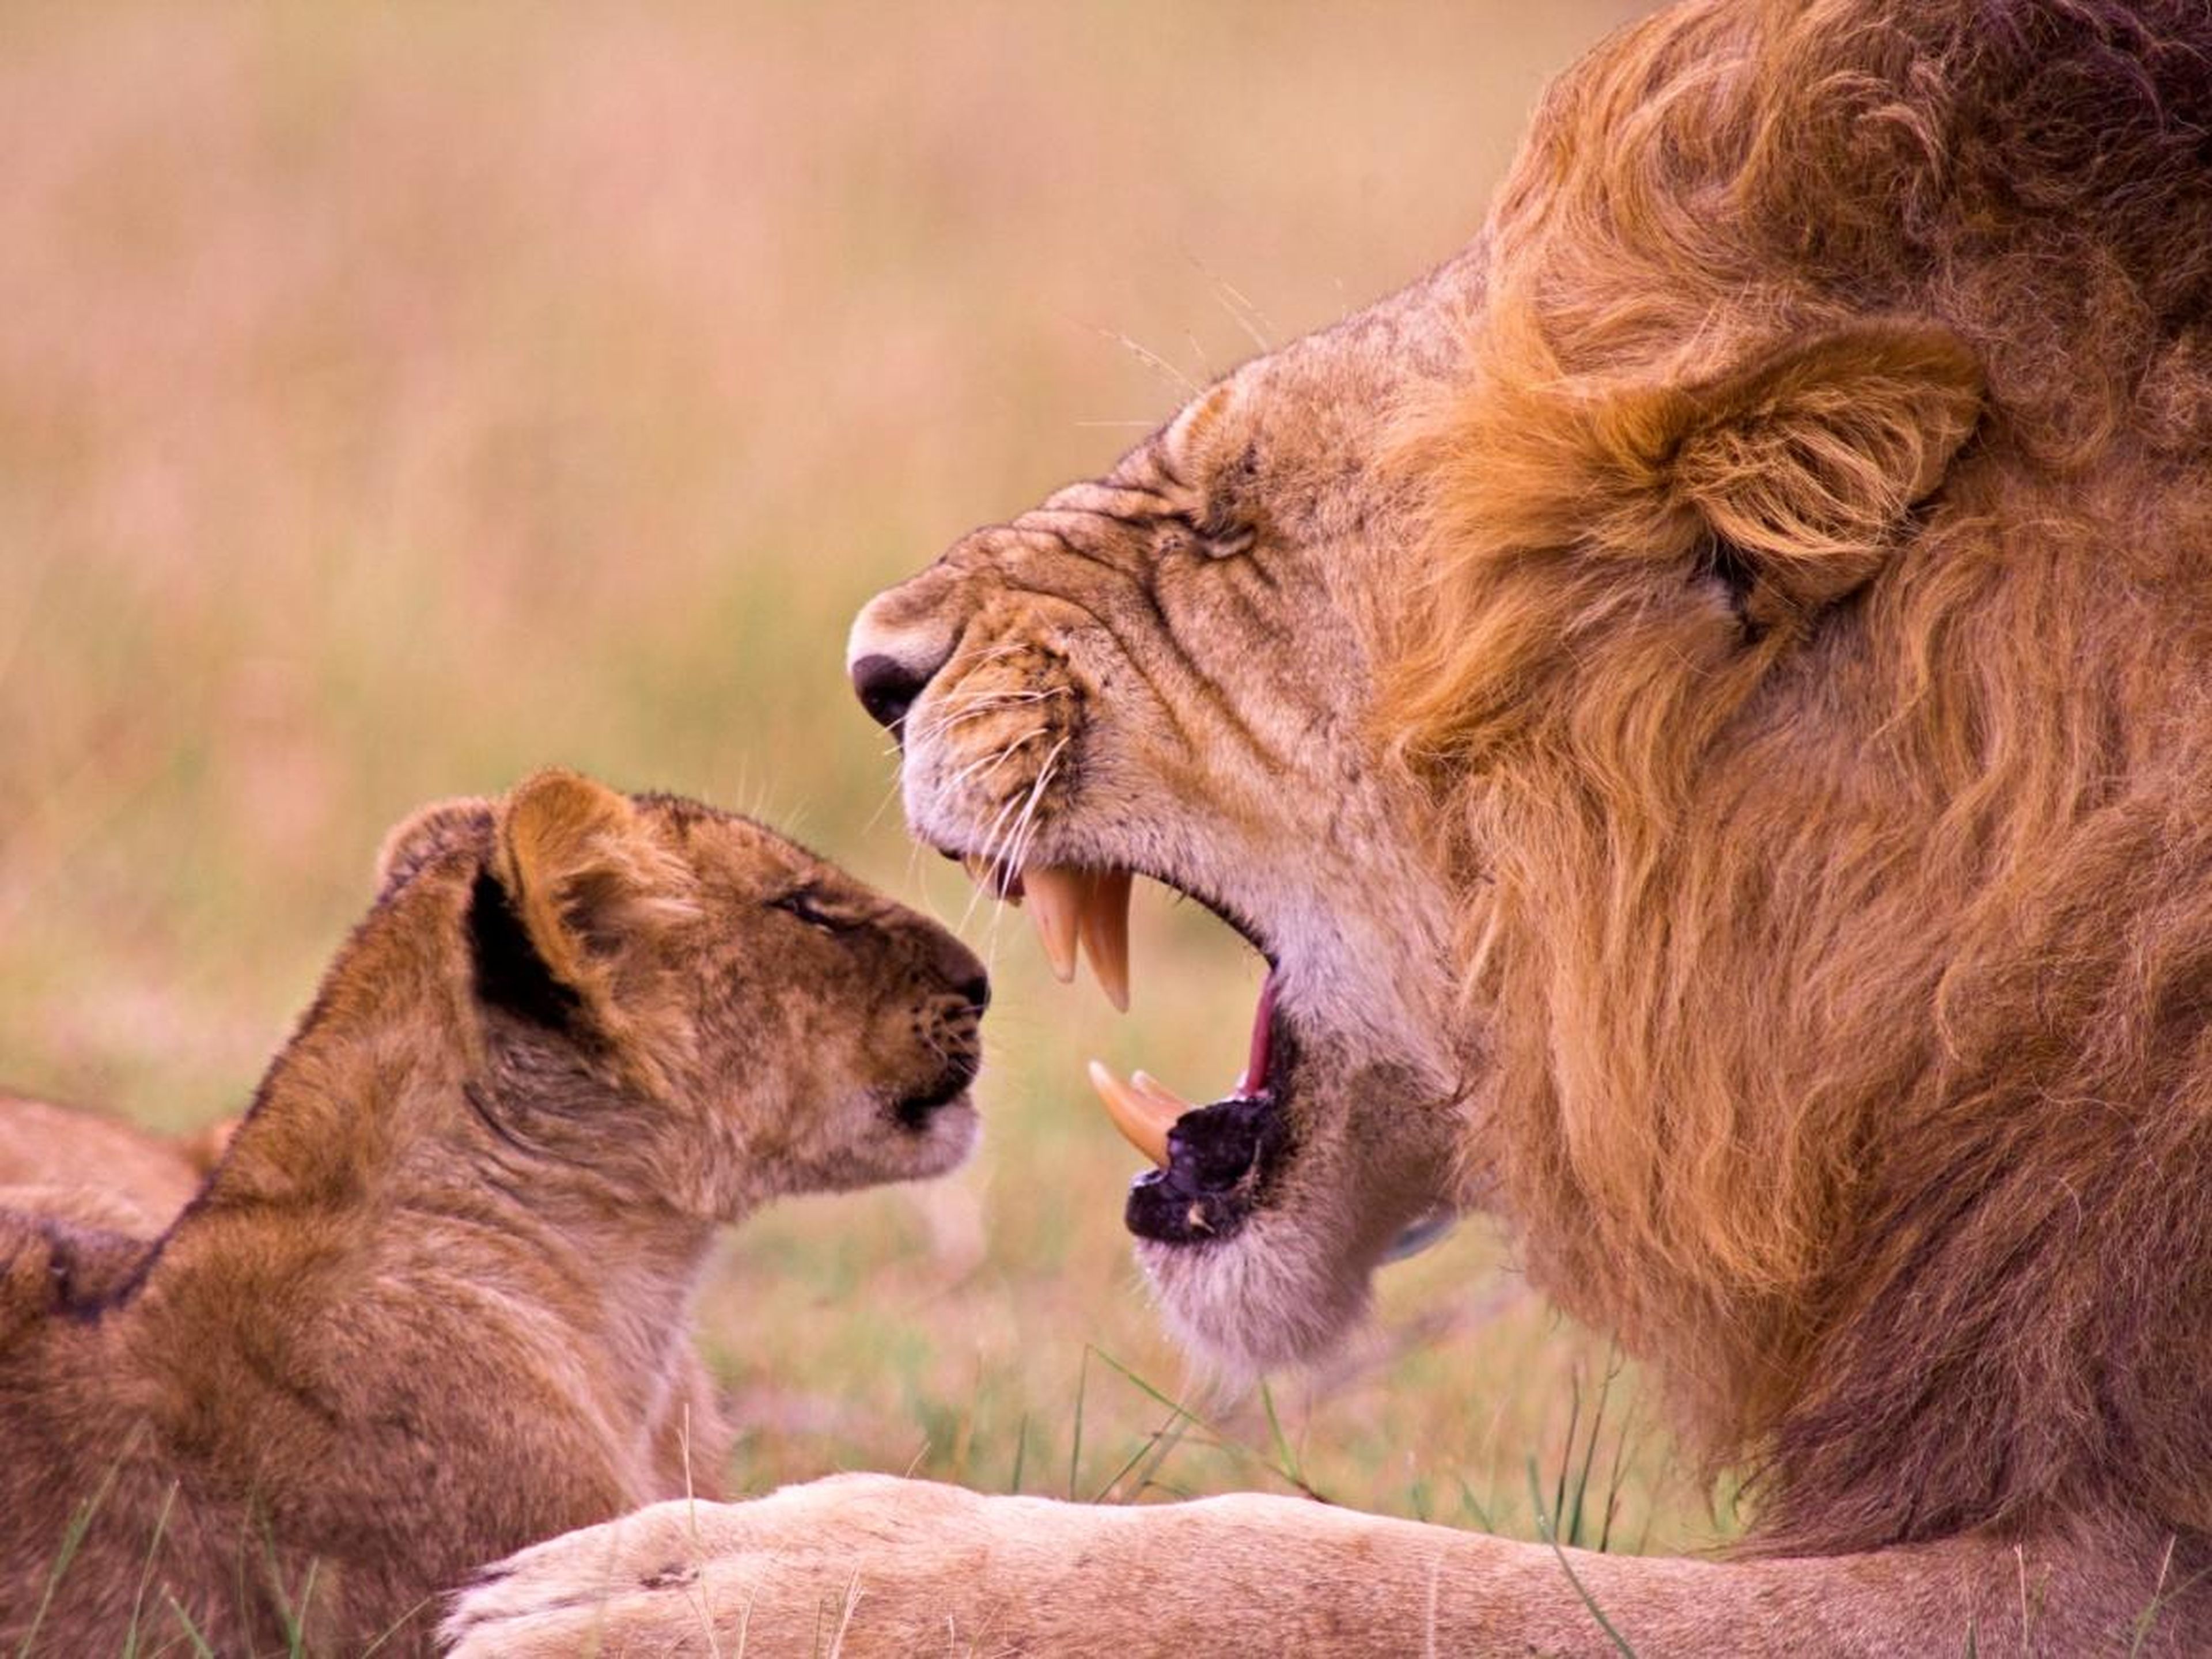 ¿Alguien ha odio hablar de las broncas de los padres a los hijos? Este furioso león está dándole una lección a su pequeño.